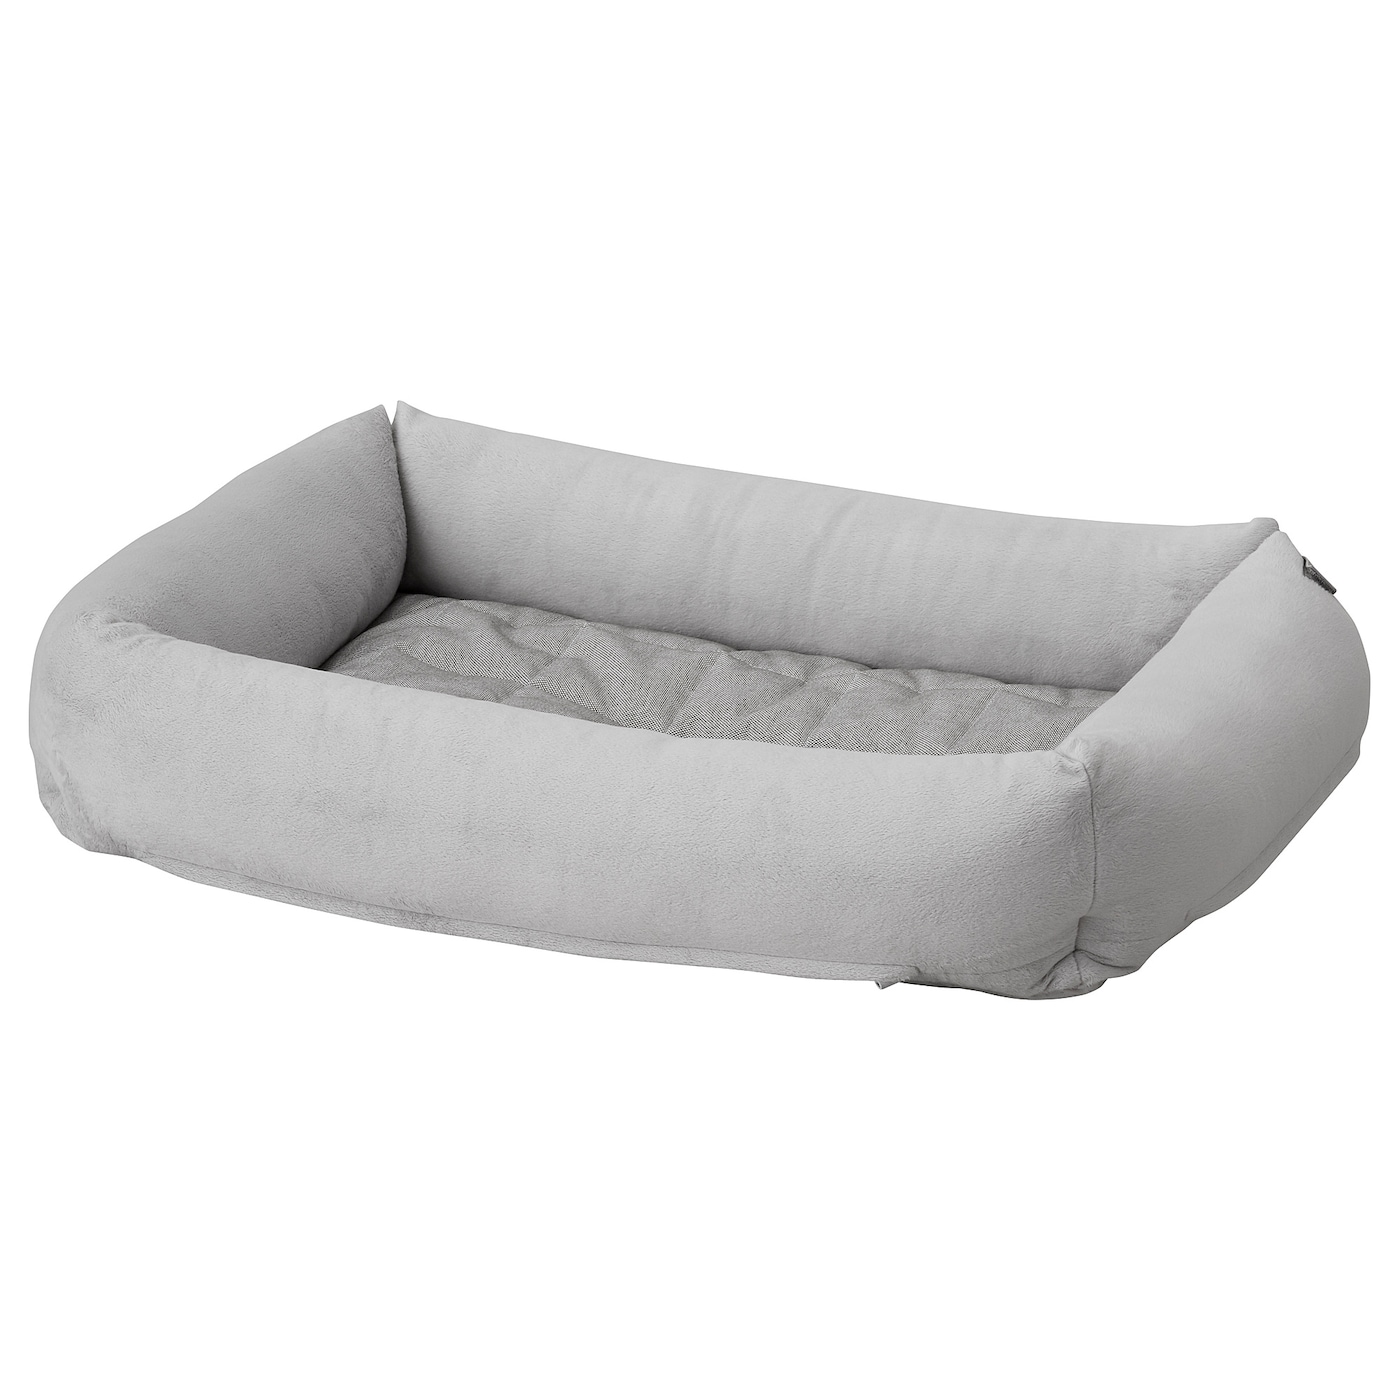 Кровать для собаки -  LURVIG IKEA/ ЛУРВИГ ИКЕА,  73х49 см, серый